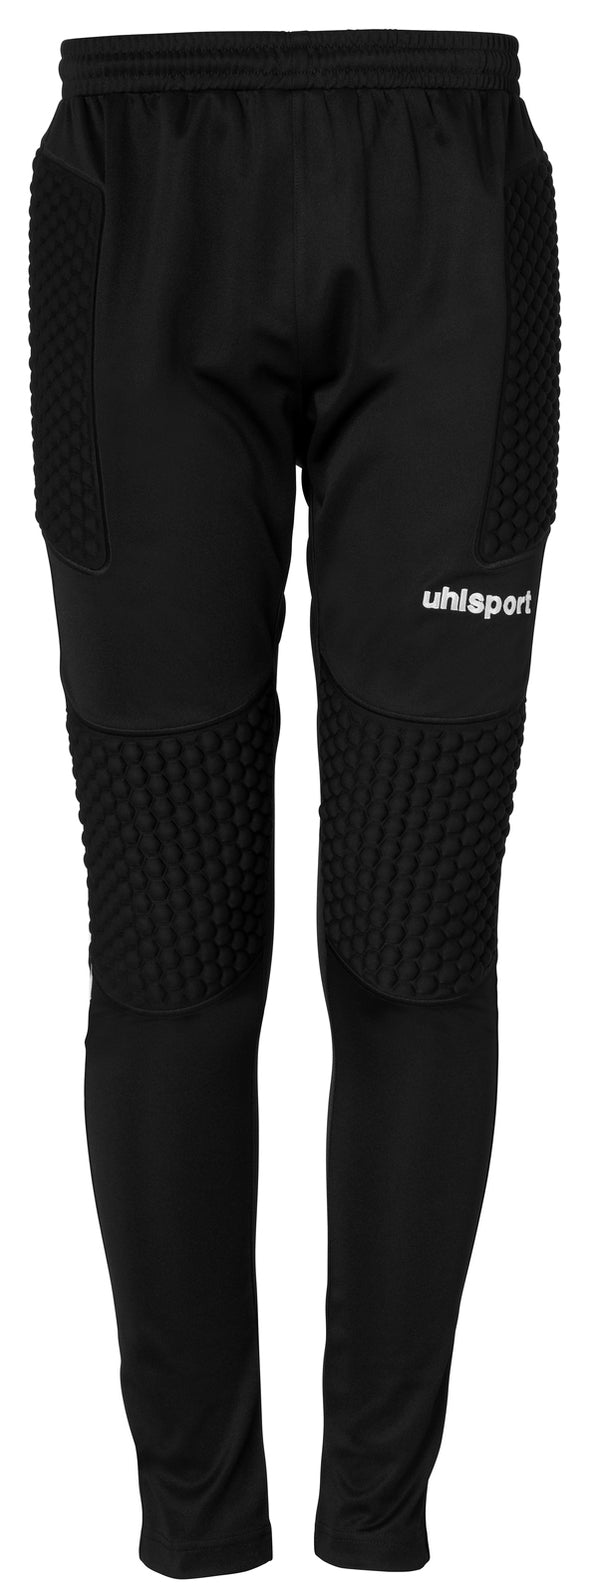 Uhlsport Standard Goalkeeper Pants - Black